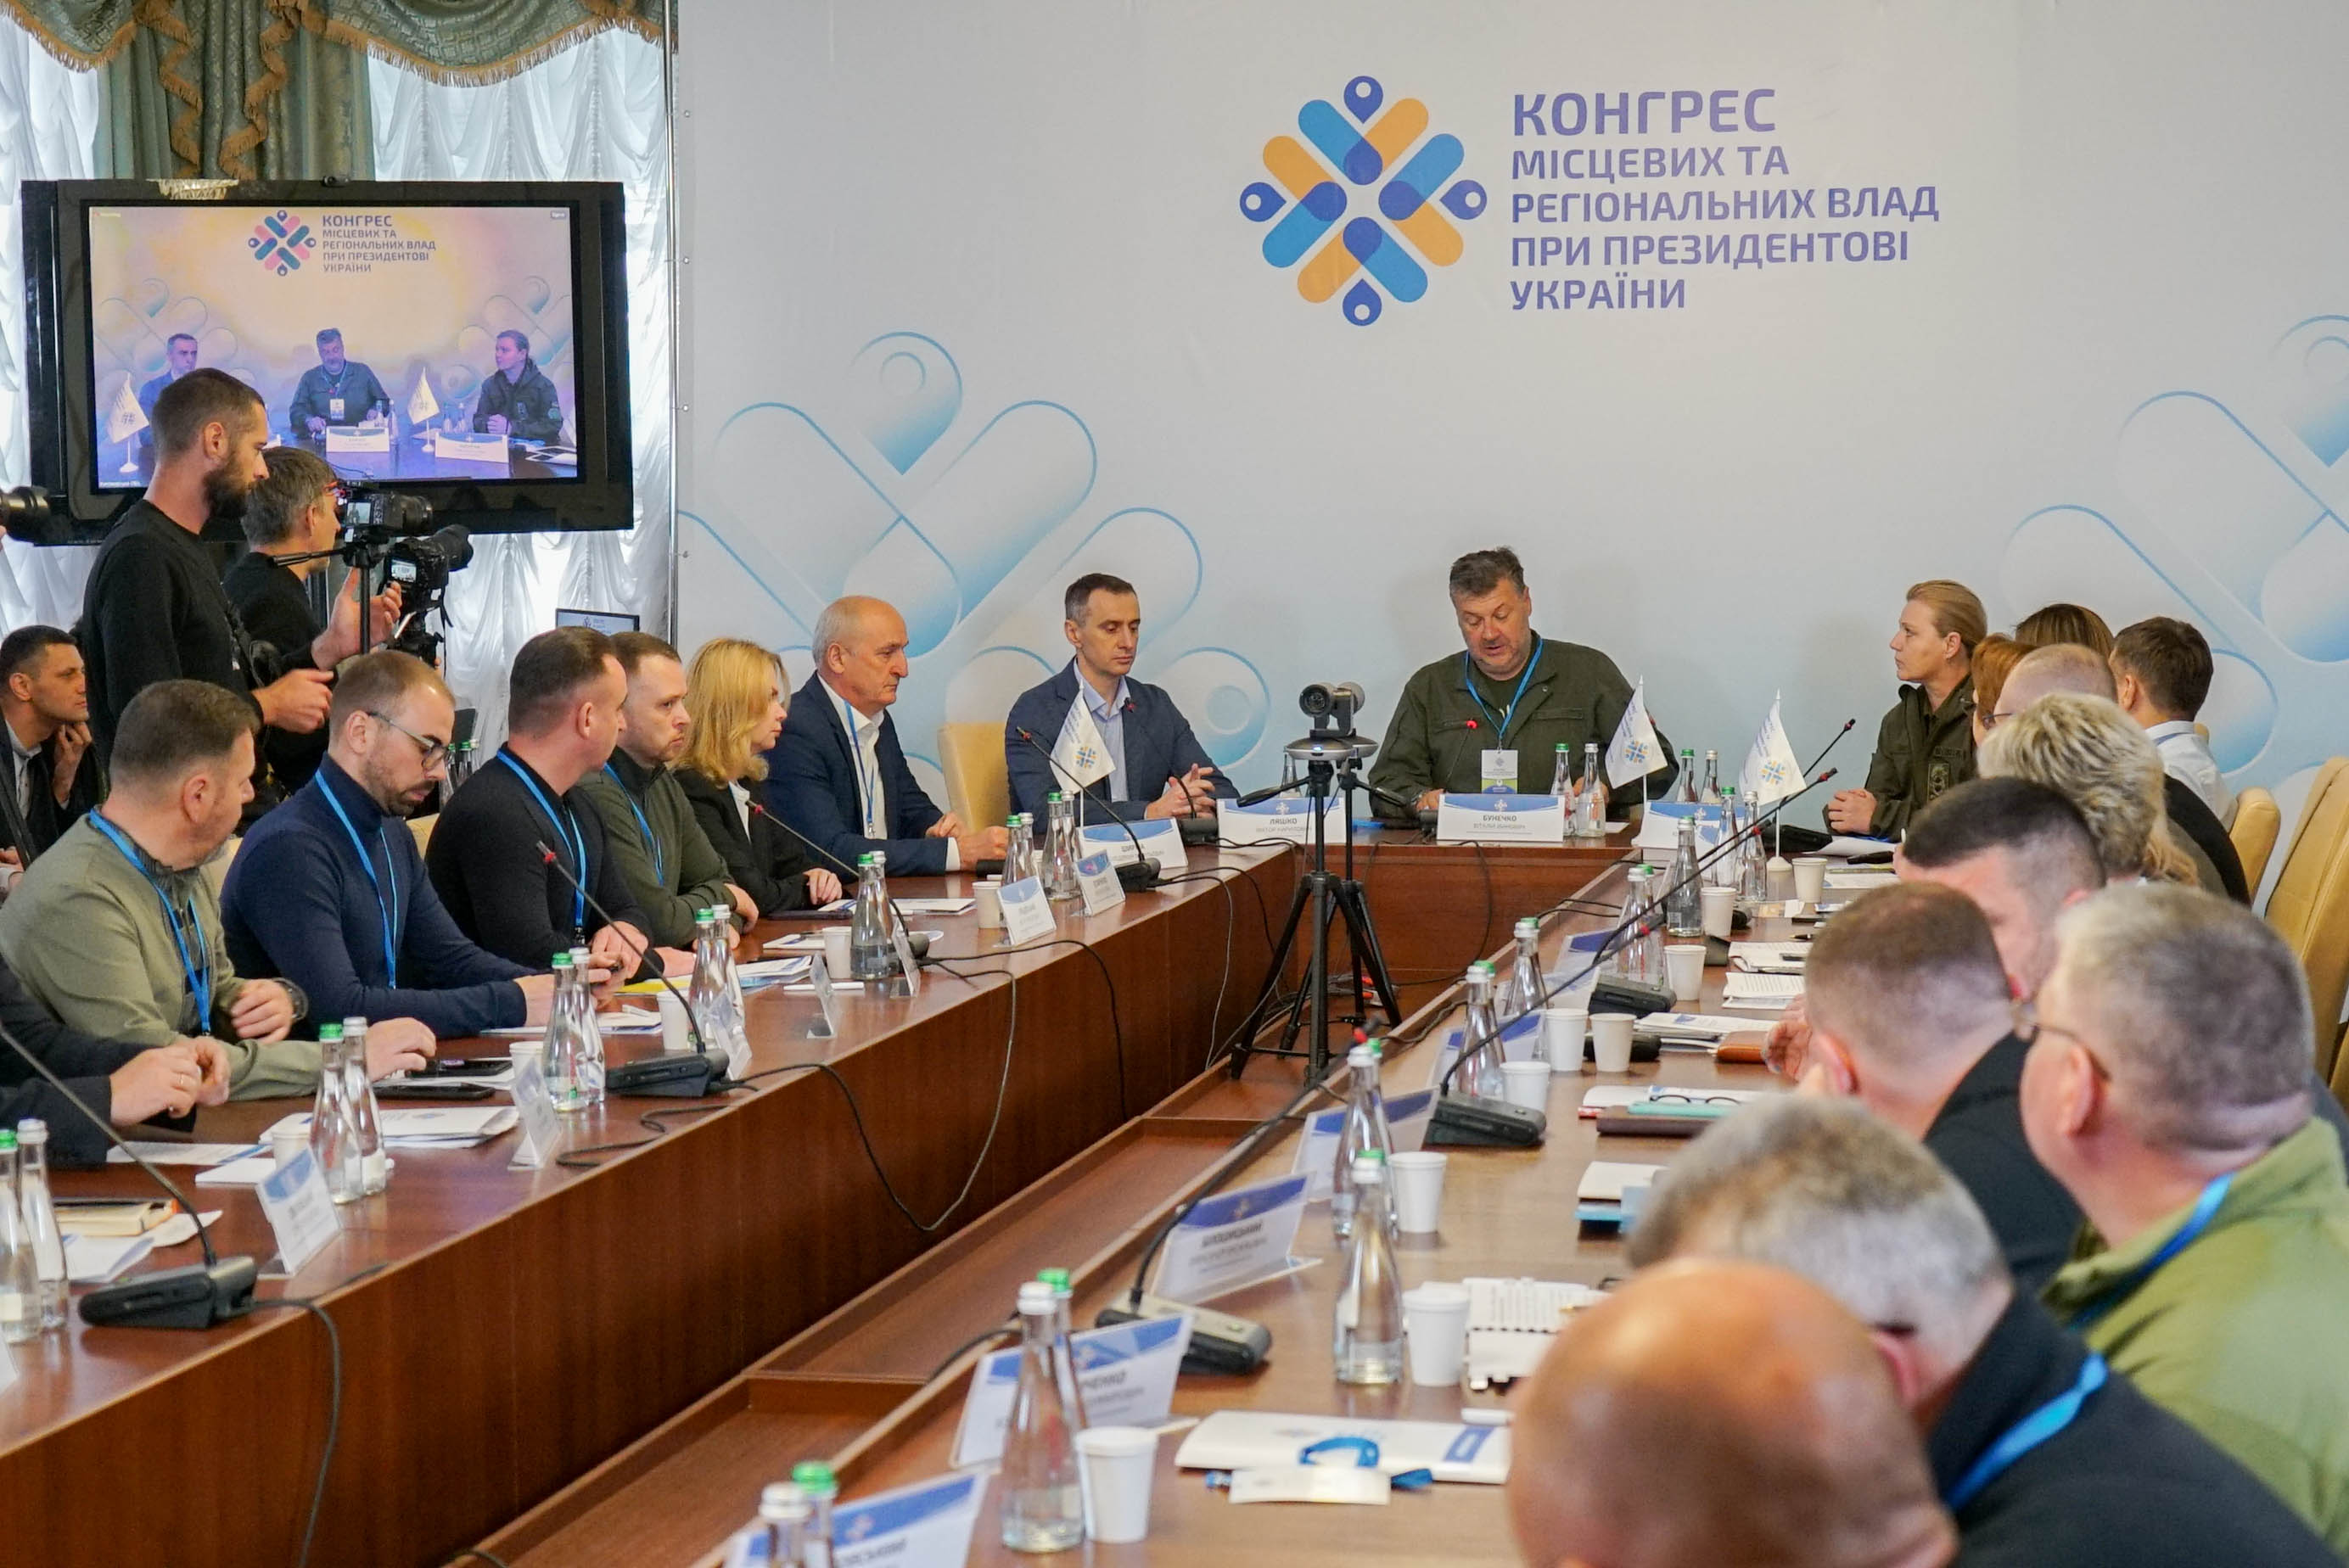 Володимир Ширма долучився до засідання членів Конгресу місцевих та регіональних влад при Президентові України 